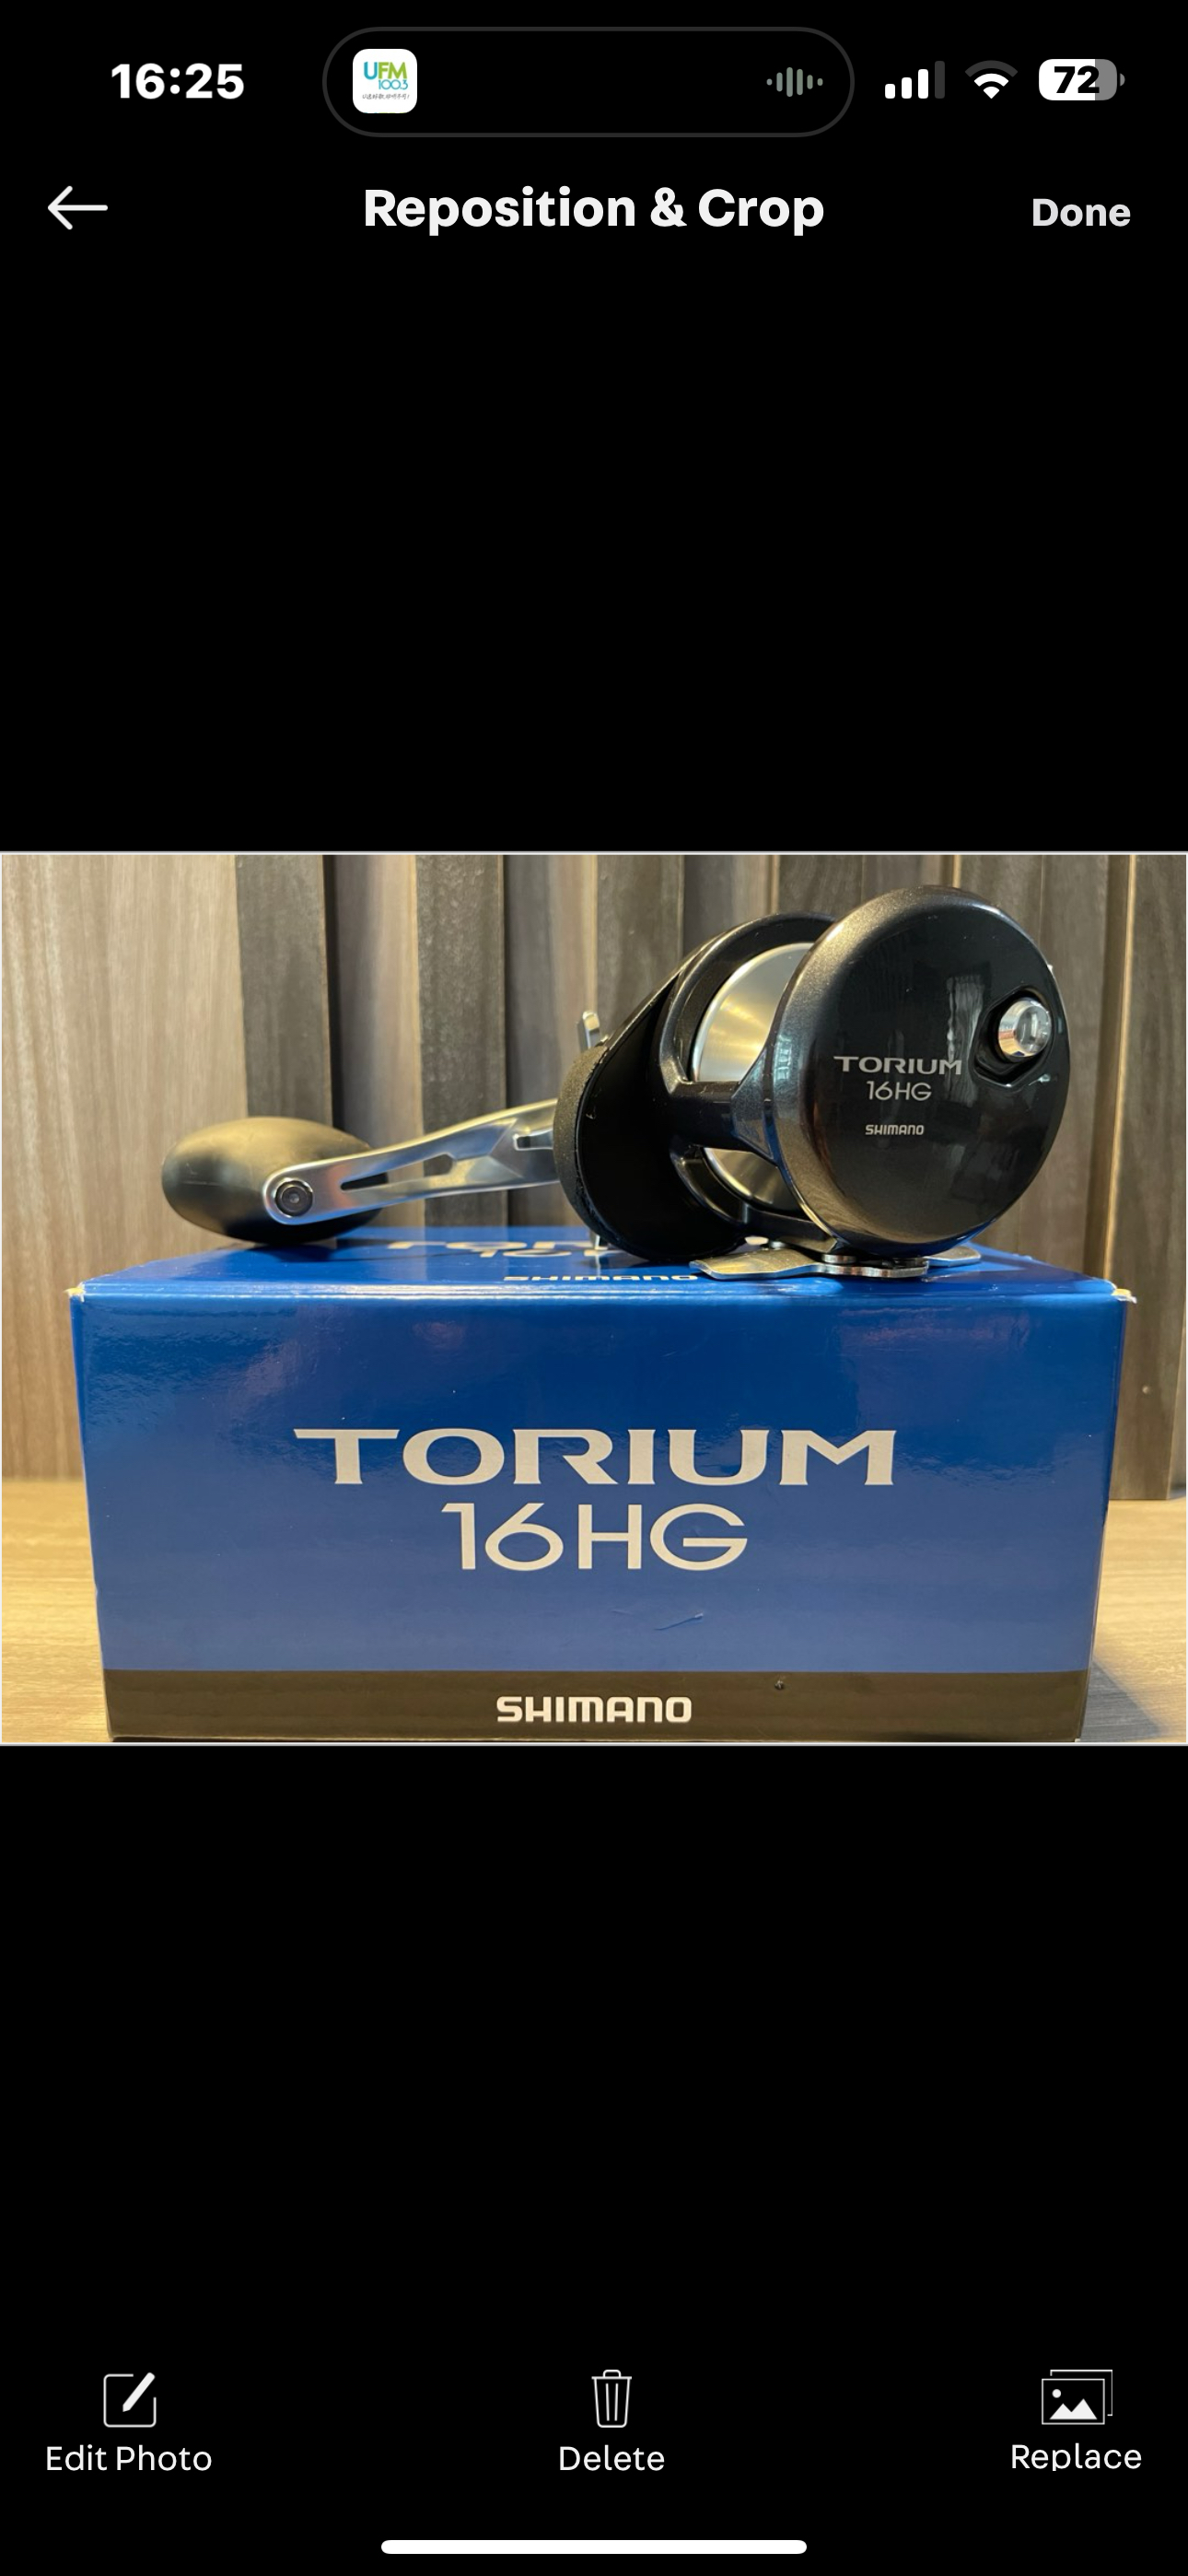 Shimano Torium 16HG